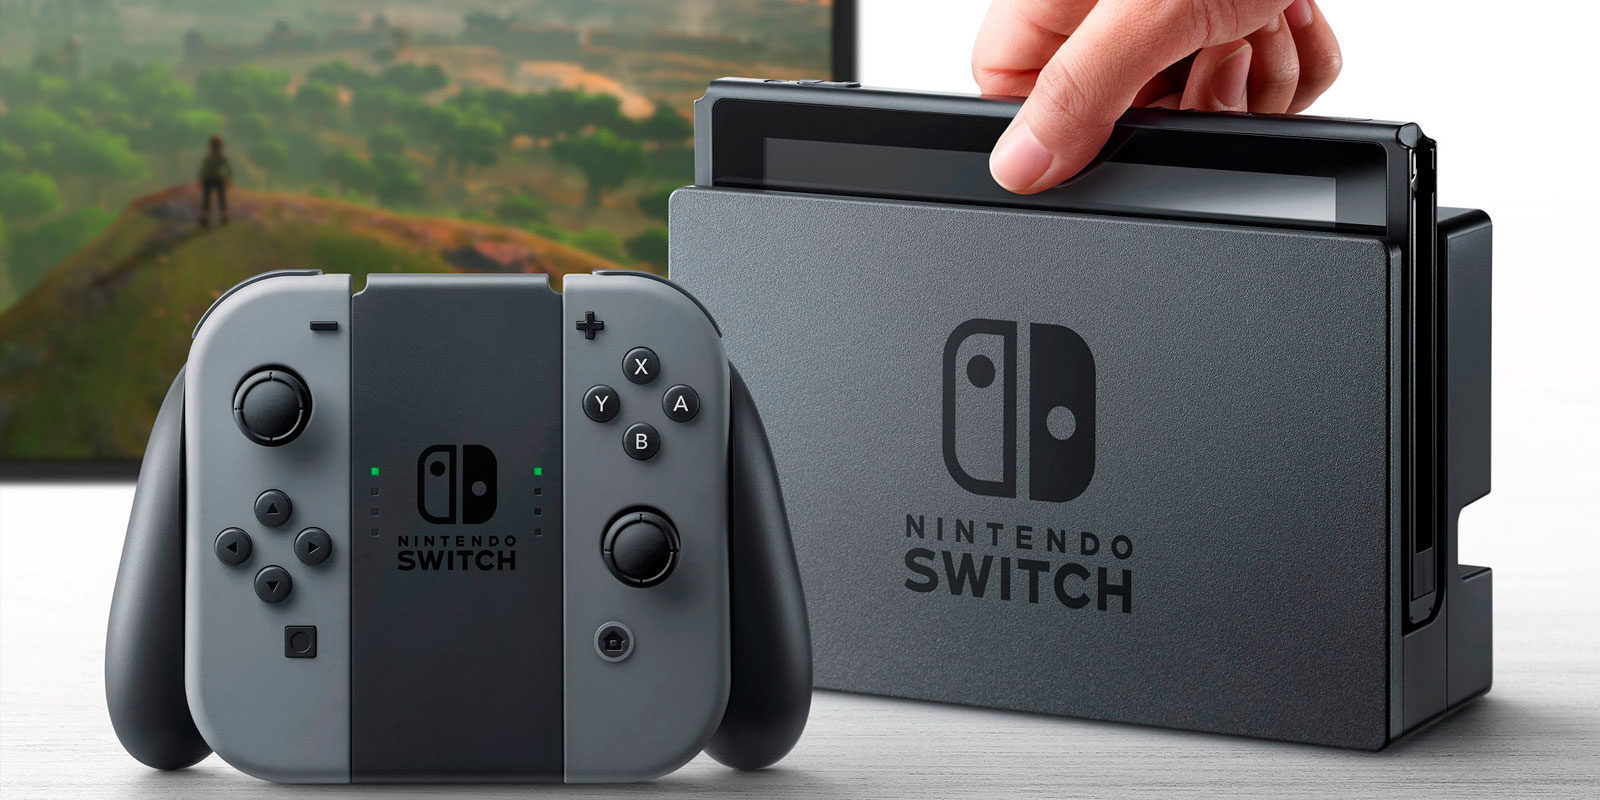 Nintendo premiará a los usuarios que encuentren vulnerabilidades en Nintendo Switch